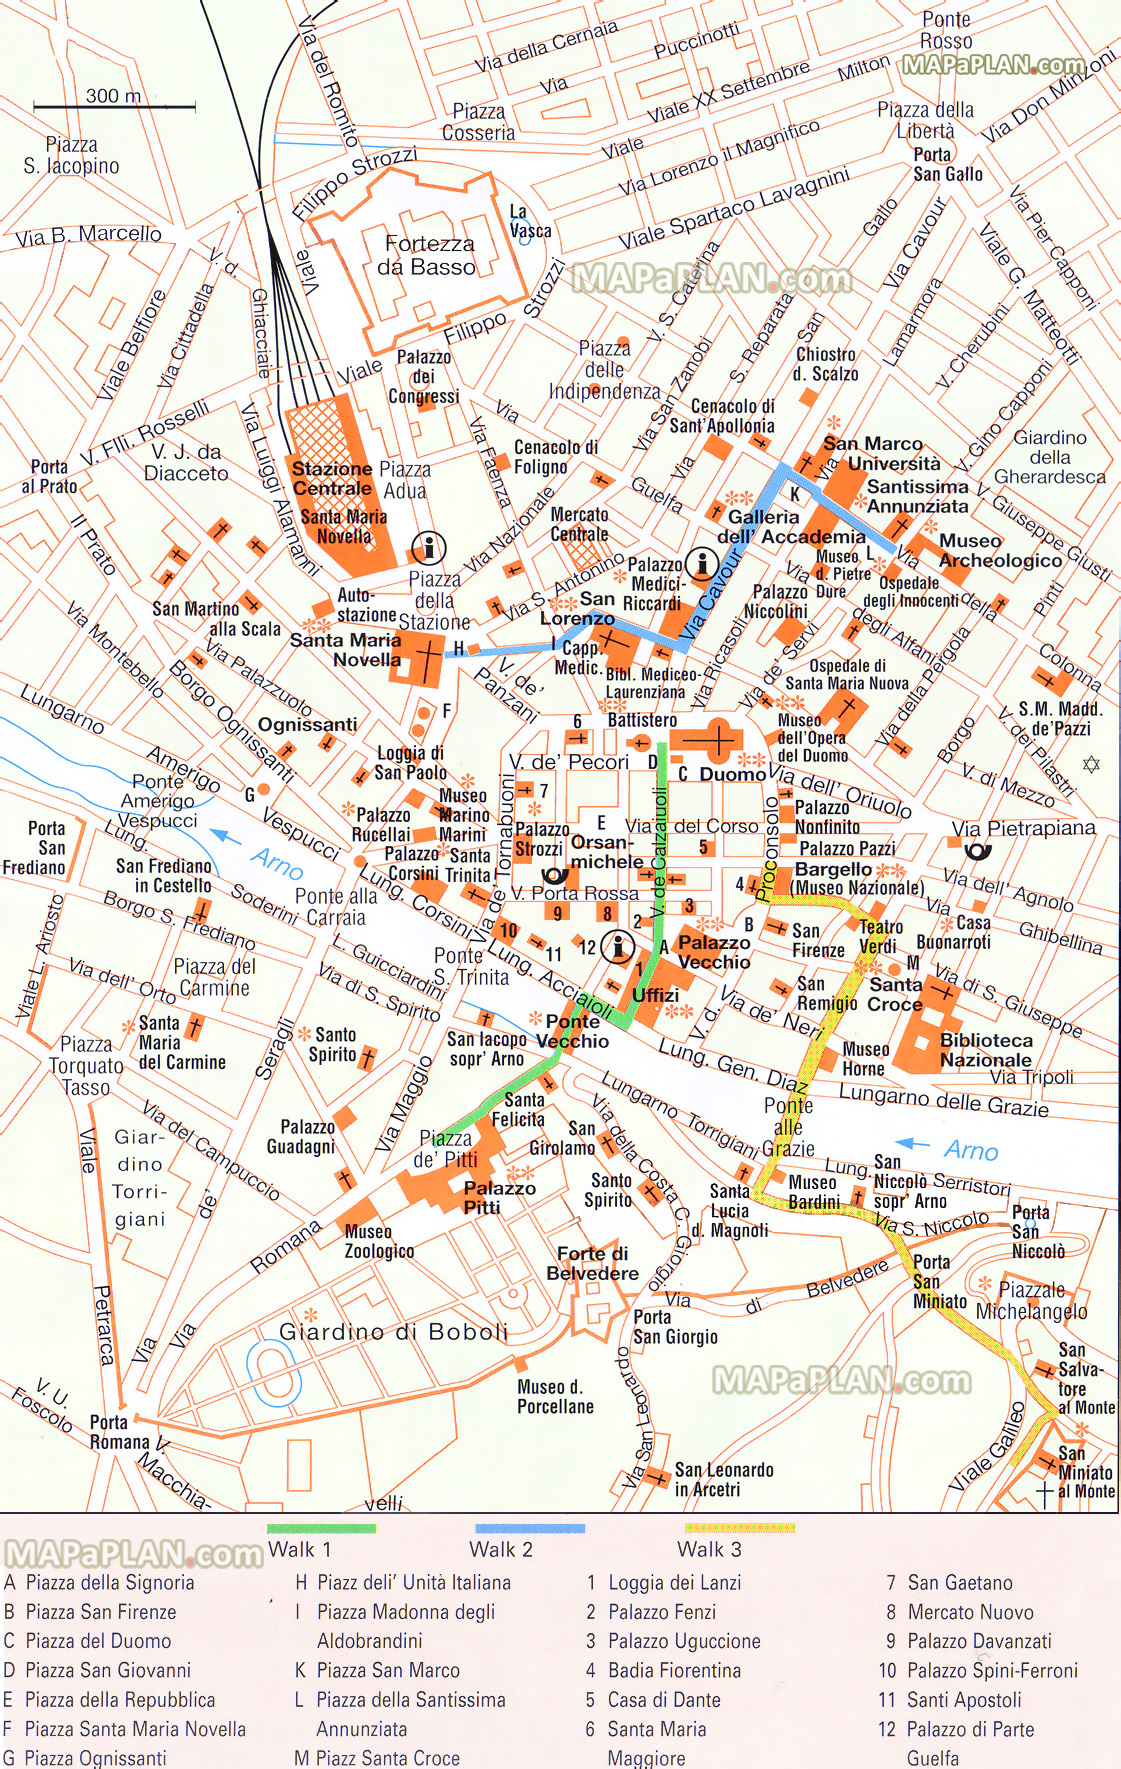 Stadtplan von Florenz inkl. Legende zum Ausdrucken - bereitgestellt von http://www.mapaplan.com